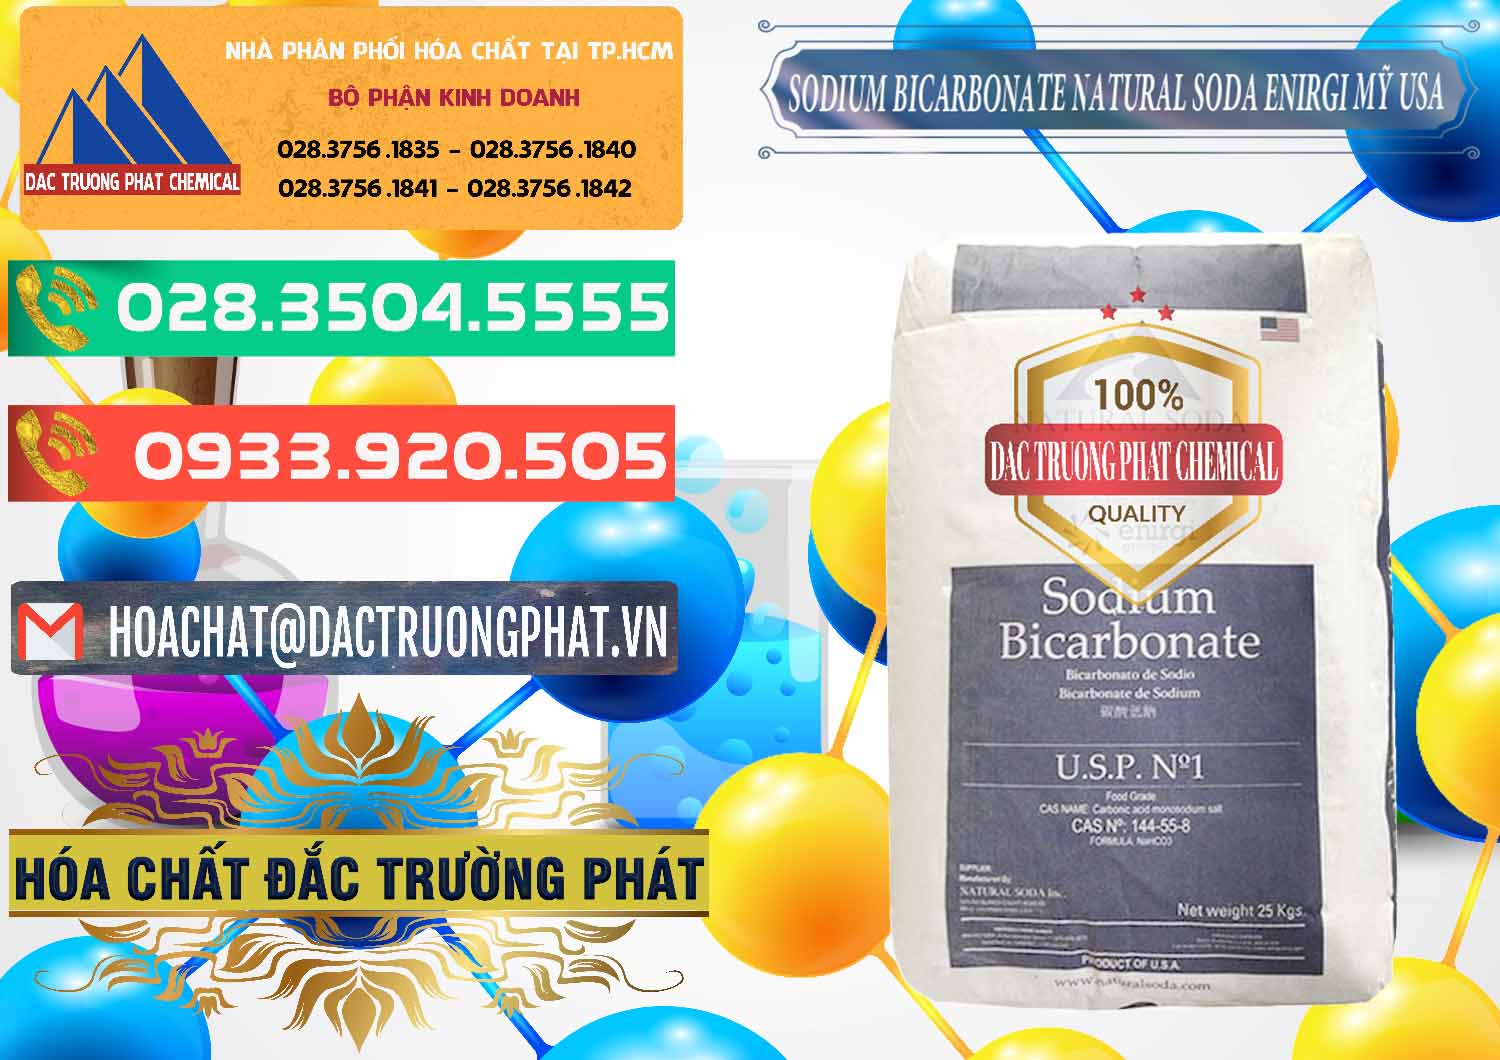 Công ty phân phối - bán Sodium Bicarbonate – Bicar NaHCO3 Food Grade Natural Soda Enirgi Mỹ USA - 0257 - Công ty kinh doanh _ phân phối hóa chất tại TP.HCM - congtyhoachat.com.vn